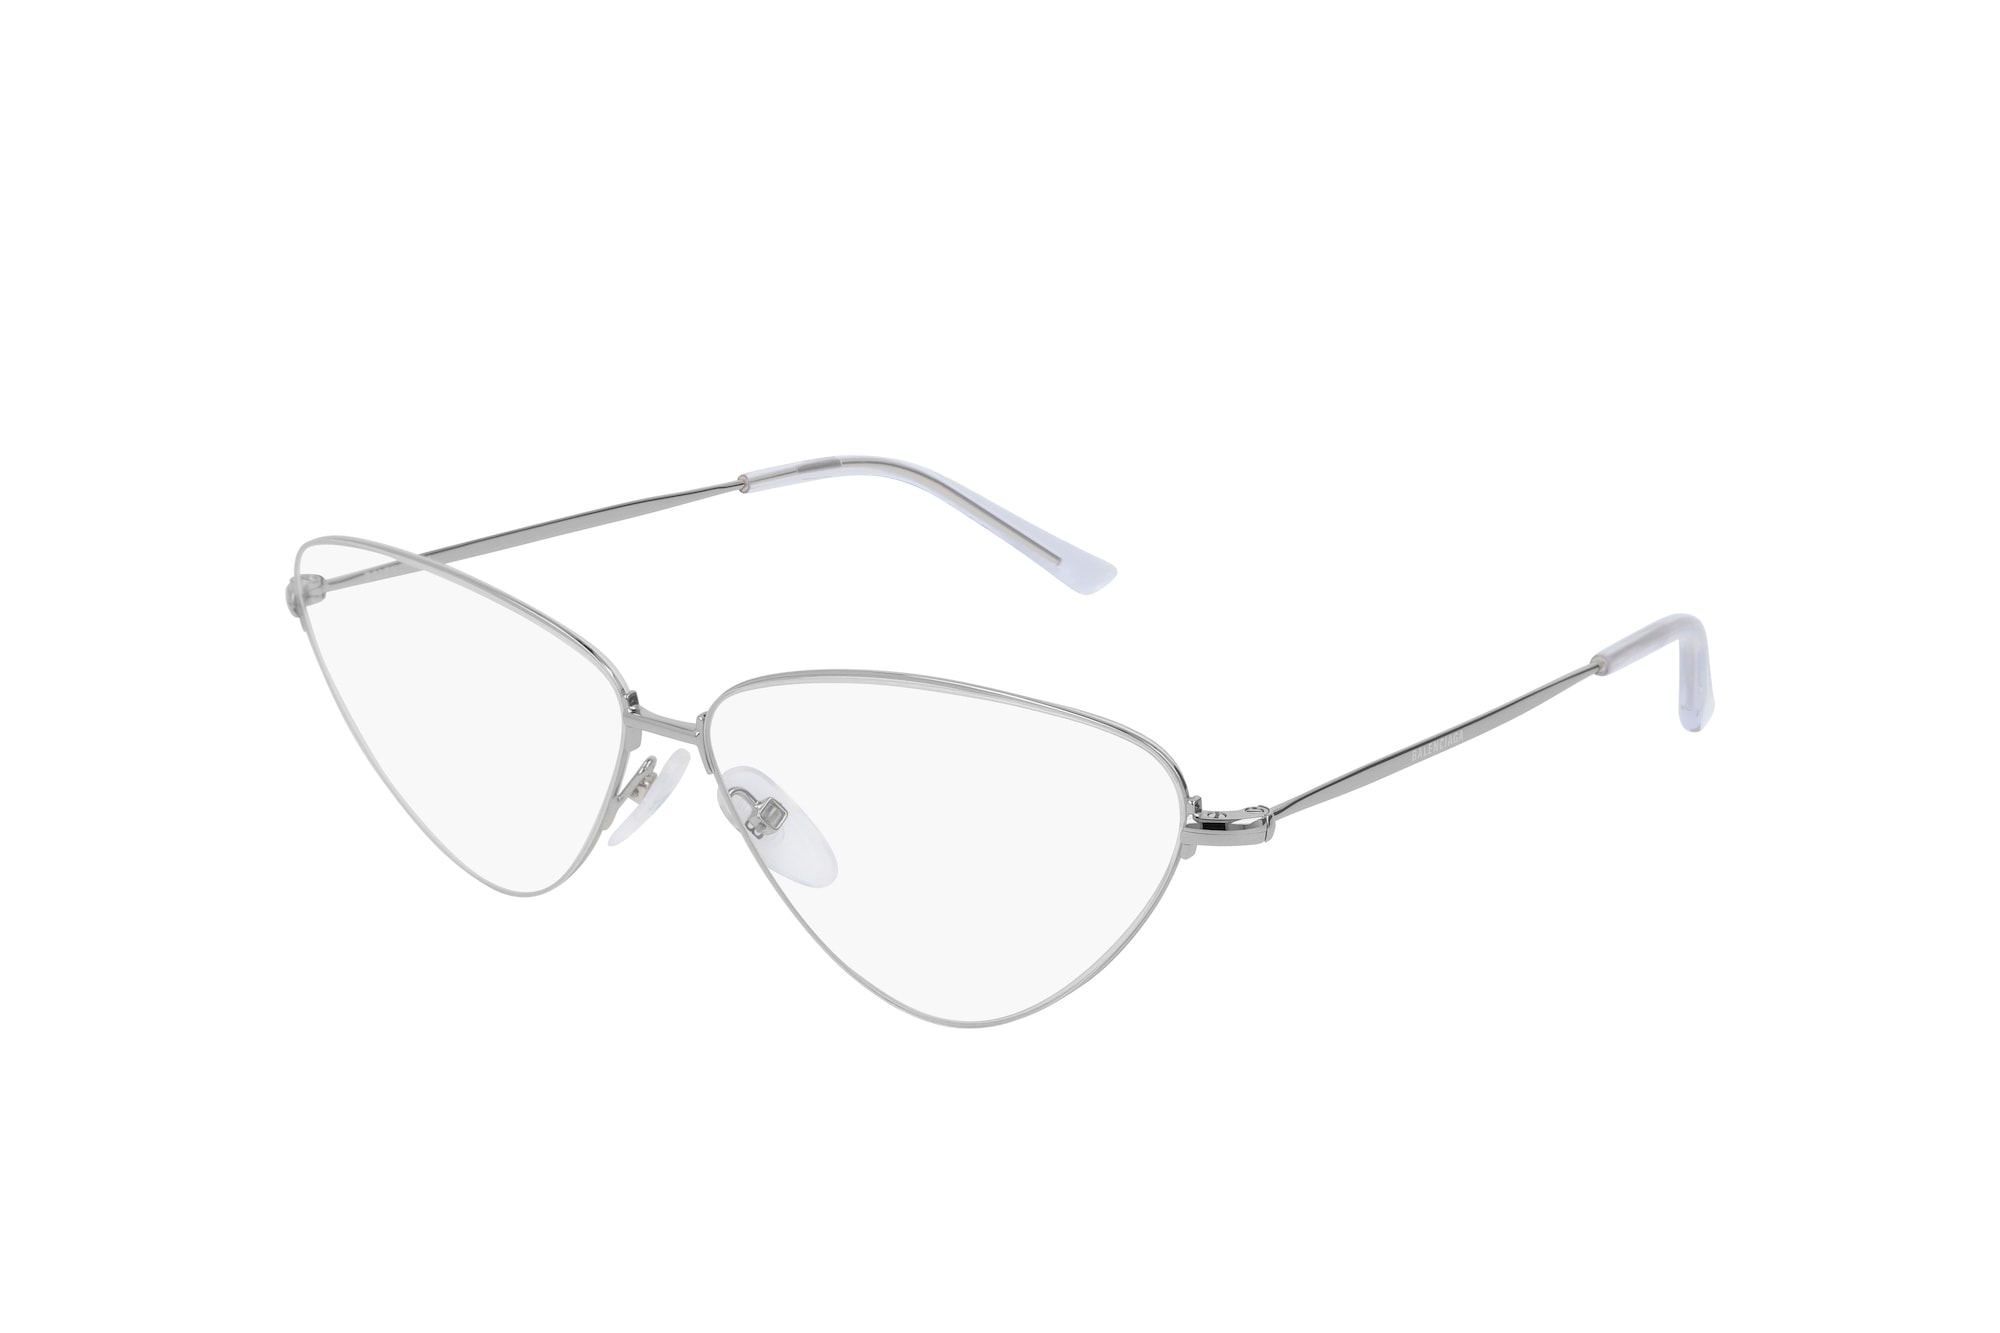 Balenciaga Summer 2019 Eyewear Collection Range Sunglasses Shades Frames Retro Futuristic Designer Logo Mirror Lenses